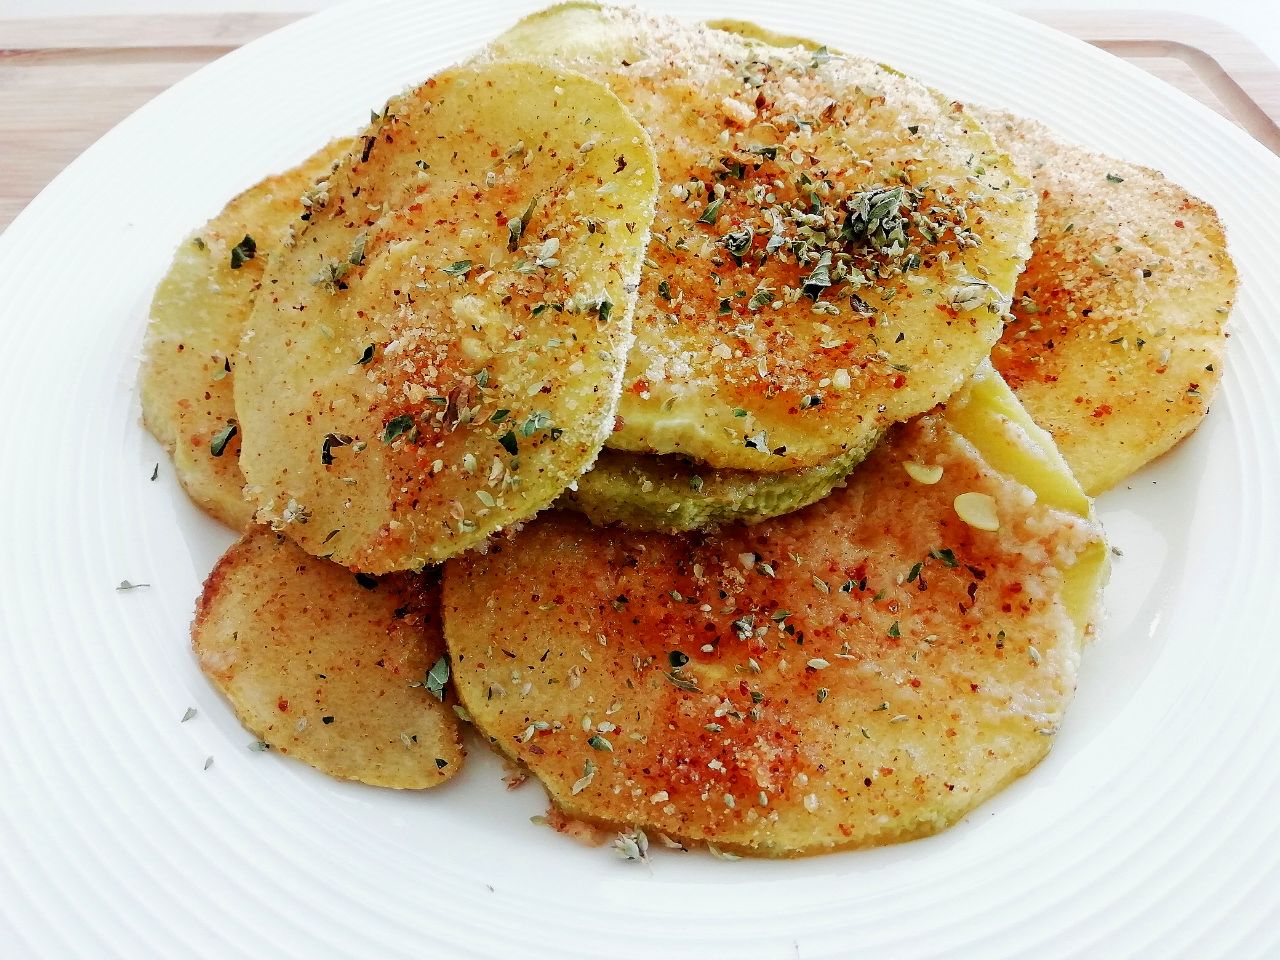 Contorni a base di verdure senza burro e senza formaggio: zucchine gratinate al forno con origano e olio evo!